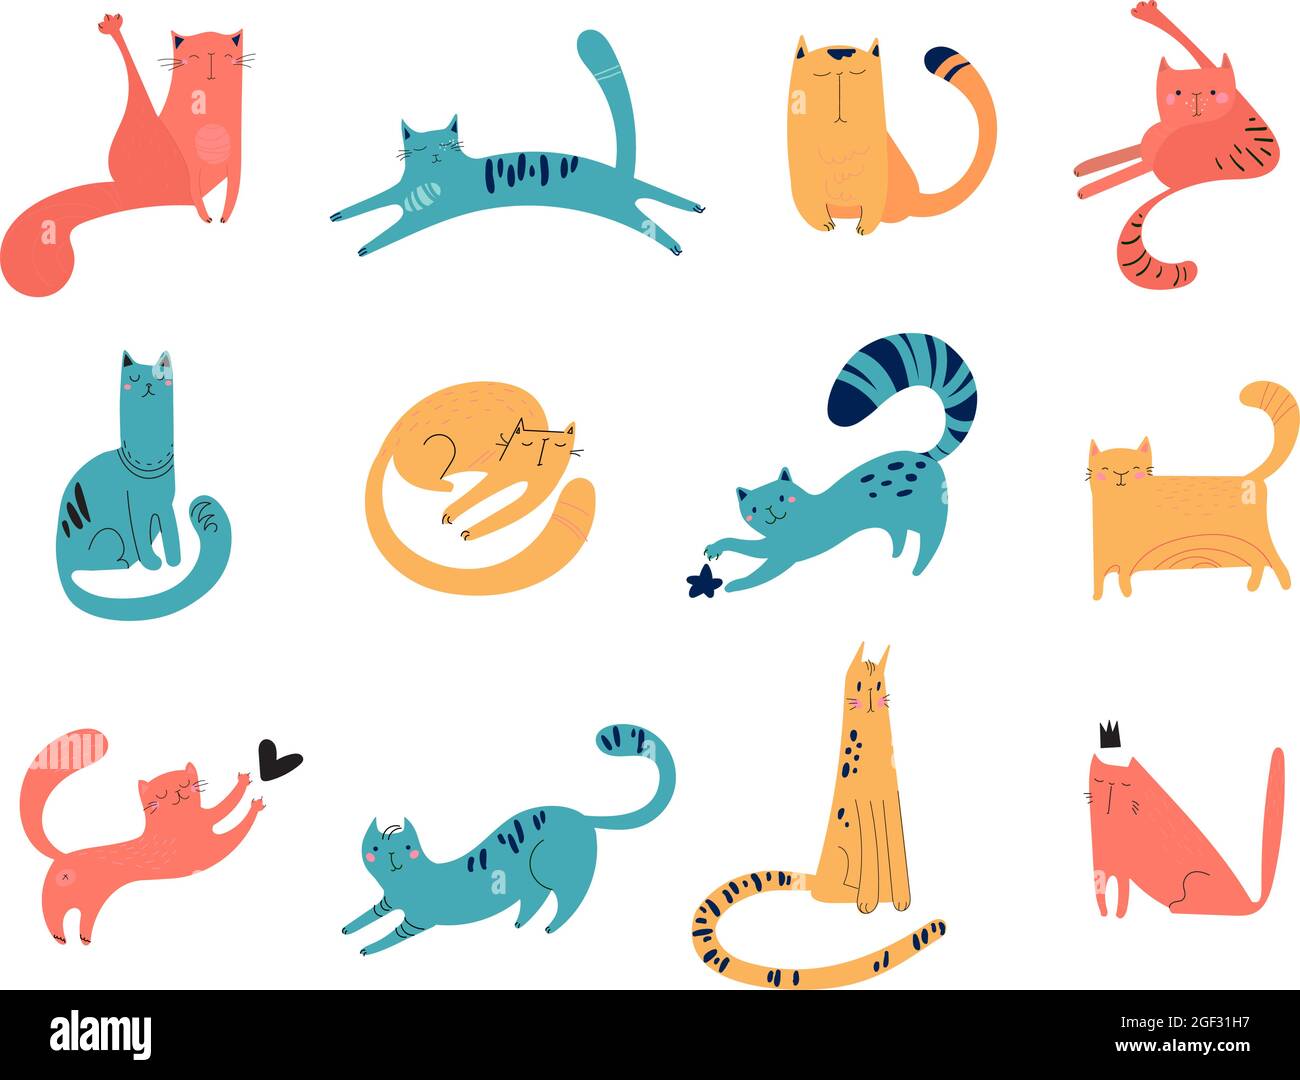 Ensemble de chats dessinés à la main pour l'impression, le textile, les t-shirts, les affiches. Visages, moustache, pattes, queues, rayures sur fond blanc. Les animaux de compagnie vectoriels de différentes couleurs jouent, s'assoient, marchent, dorment. Illustration de Vecteur